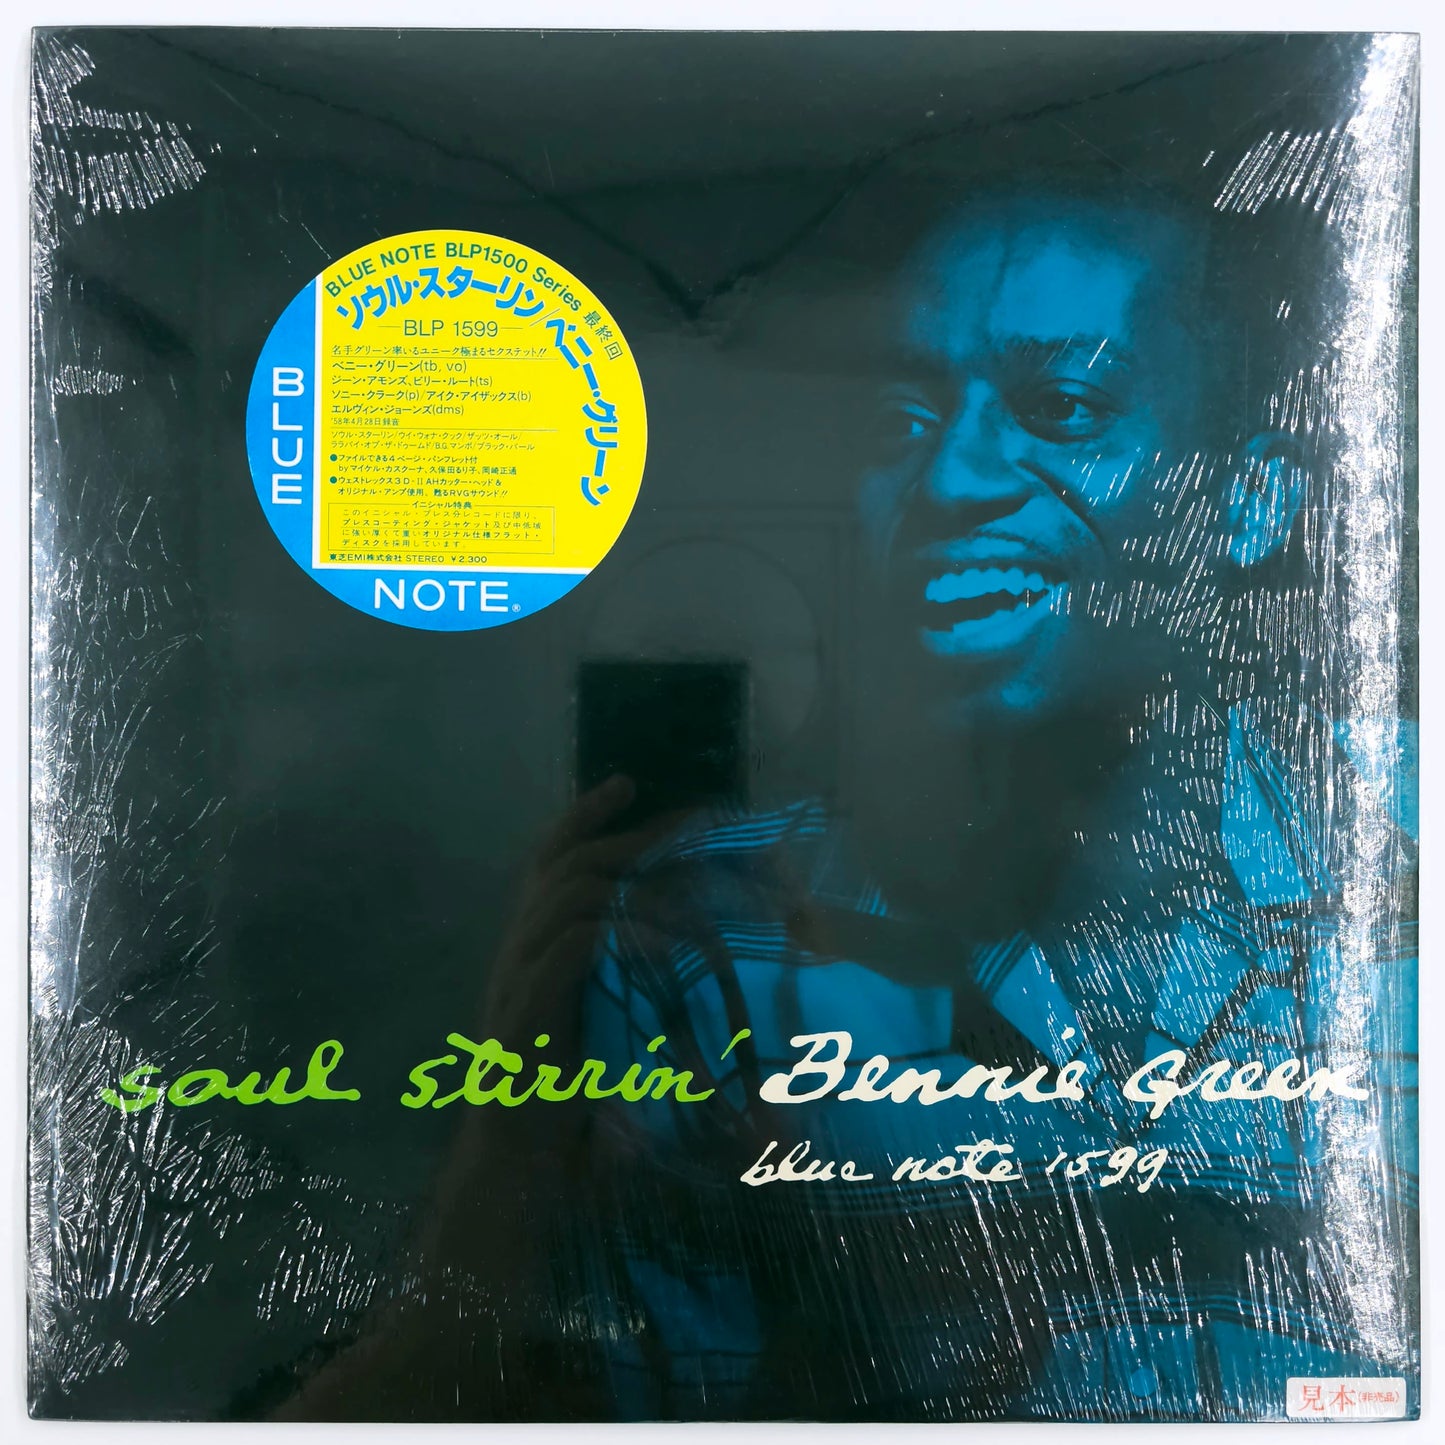 Bennie Green – Soul Stirrin'